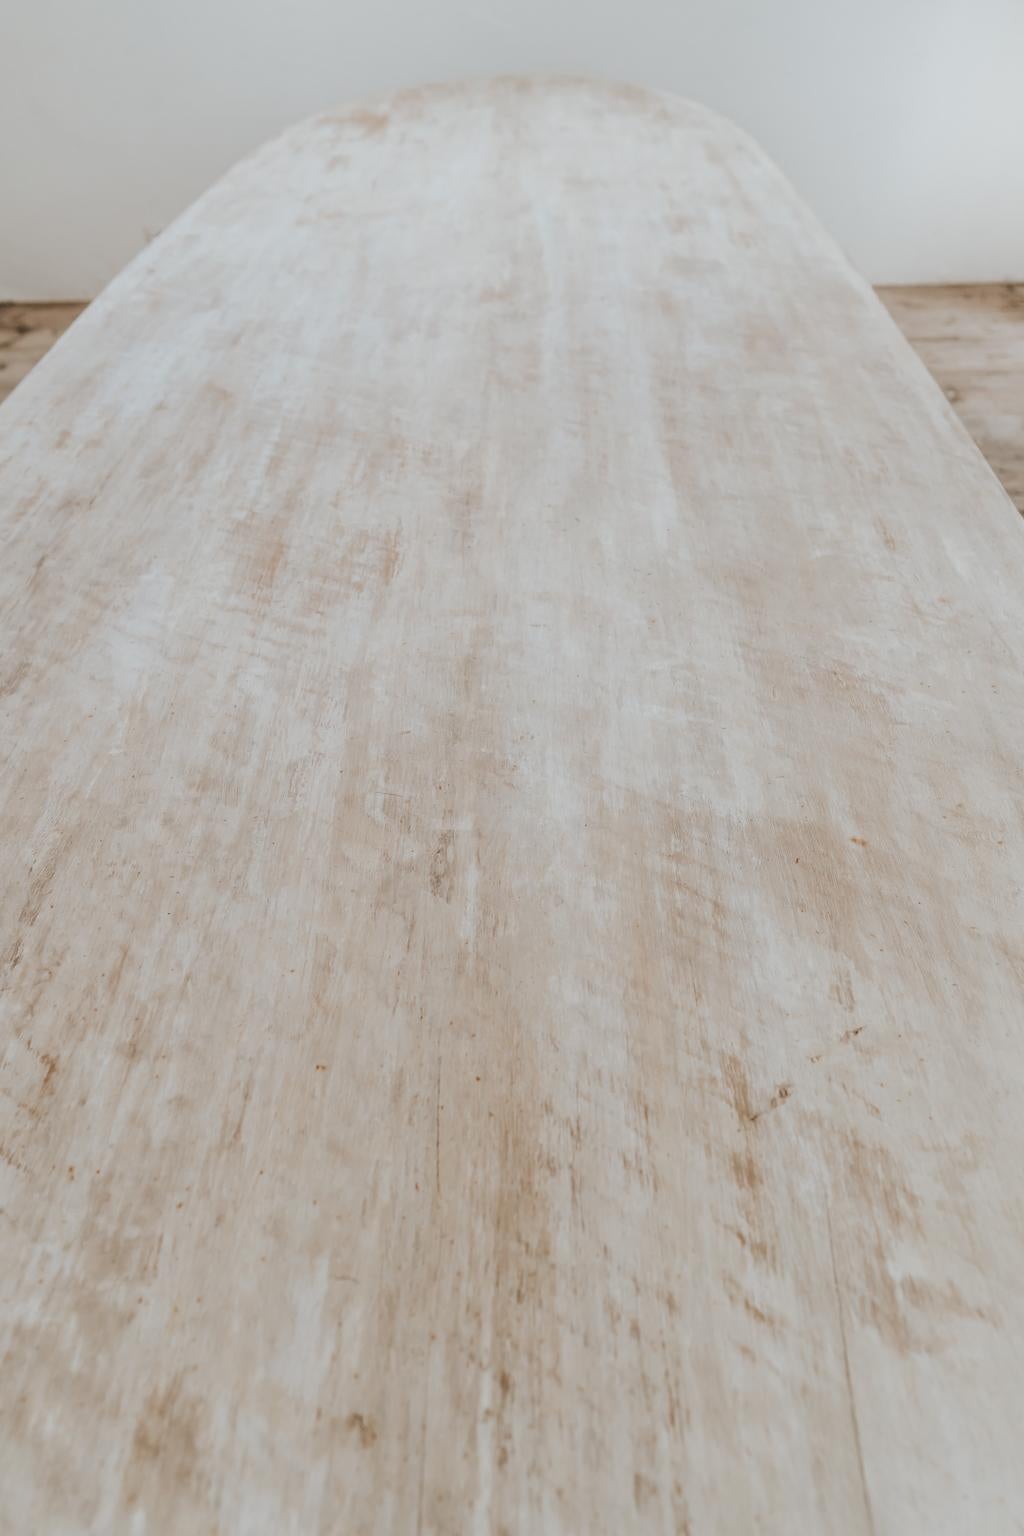 Customized /Creation of Extra Large Poplarwood Table  2